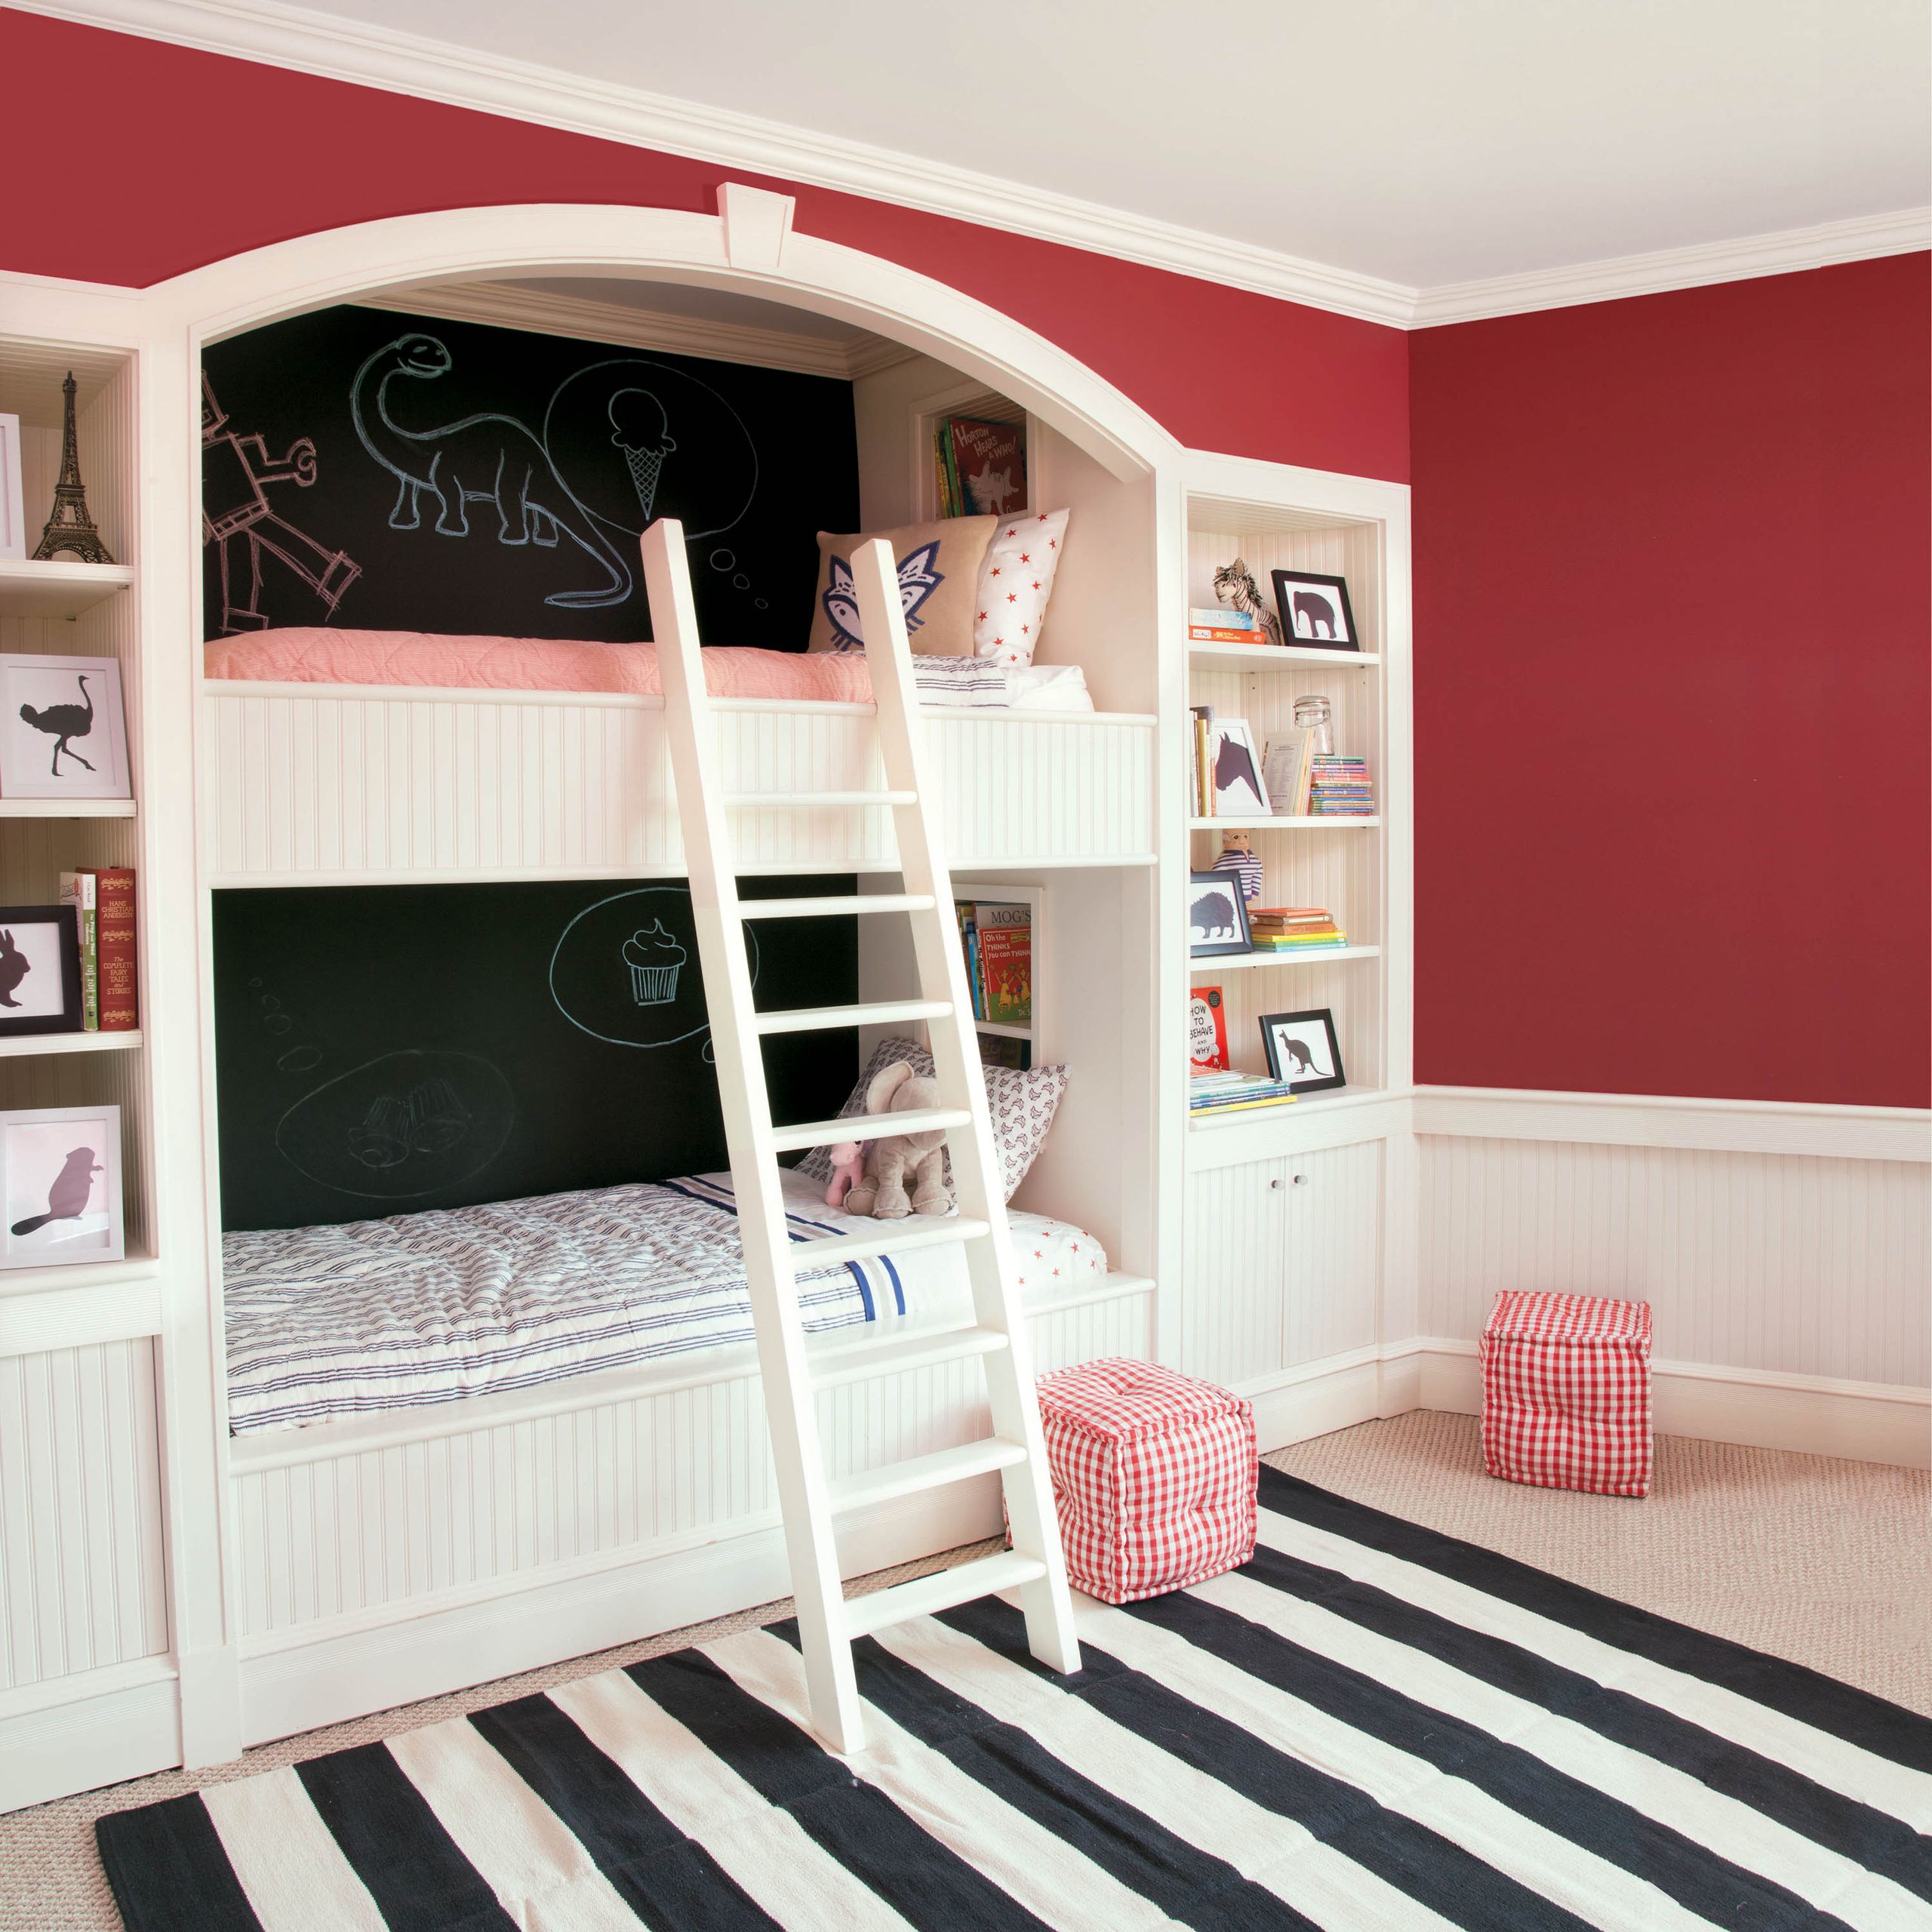 Kinderstapelbed met schoolbordverf muur en rode hoofdmuren's bunk beds with blackboard paint wall and red main walls